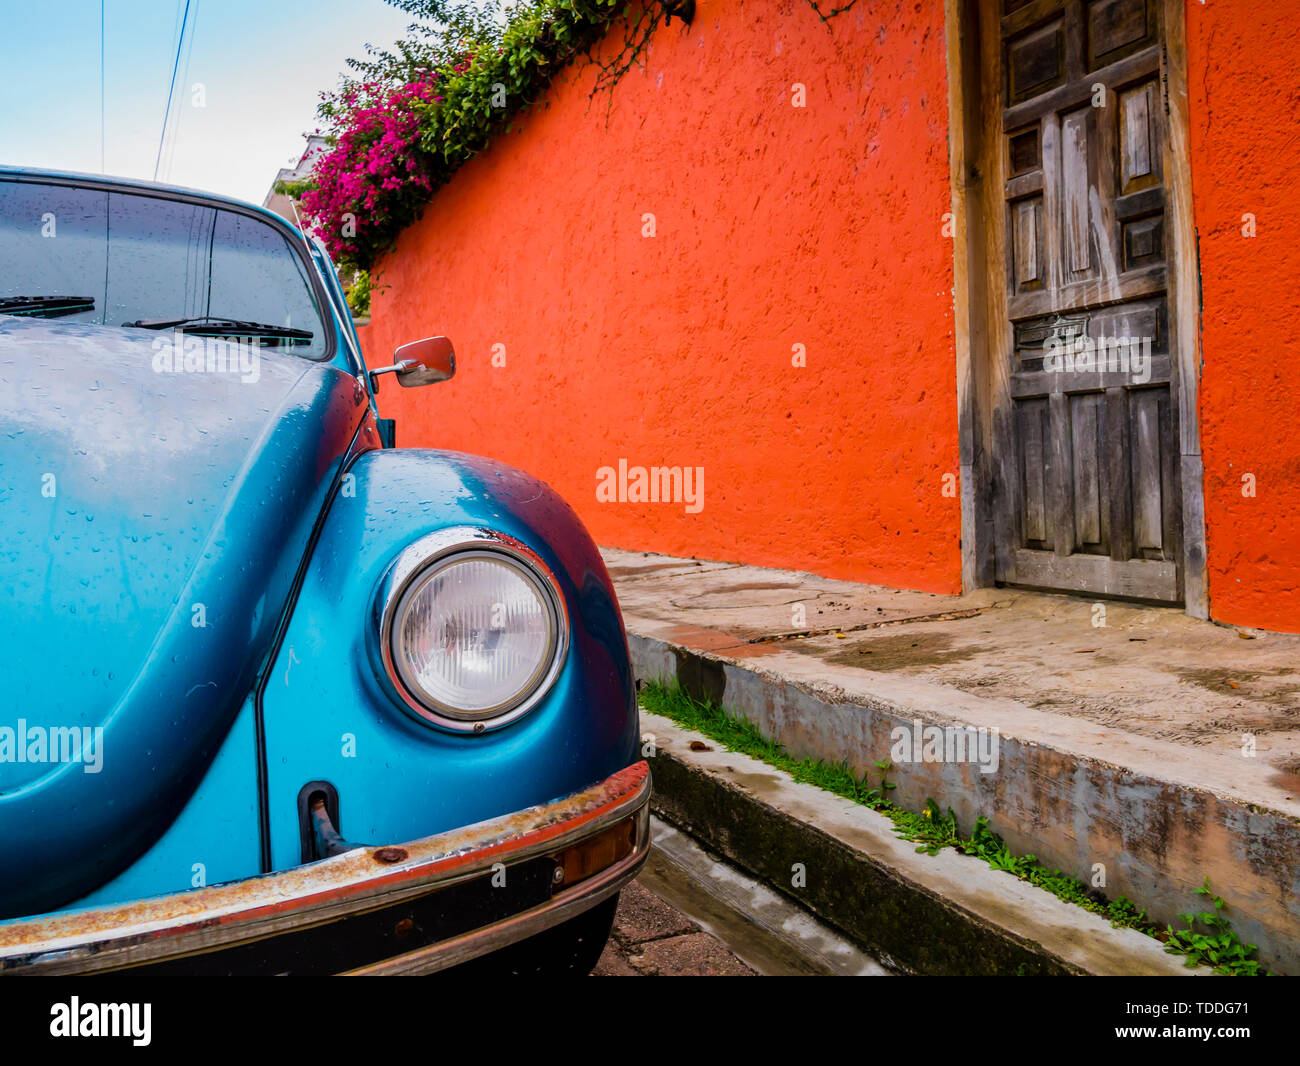 Vieux classique voiture garée dans les rues colorées de San Cristobal de las Casas, Chiapas, Mexique Banque D'Images